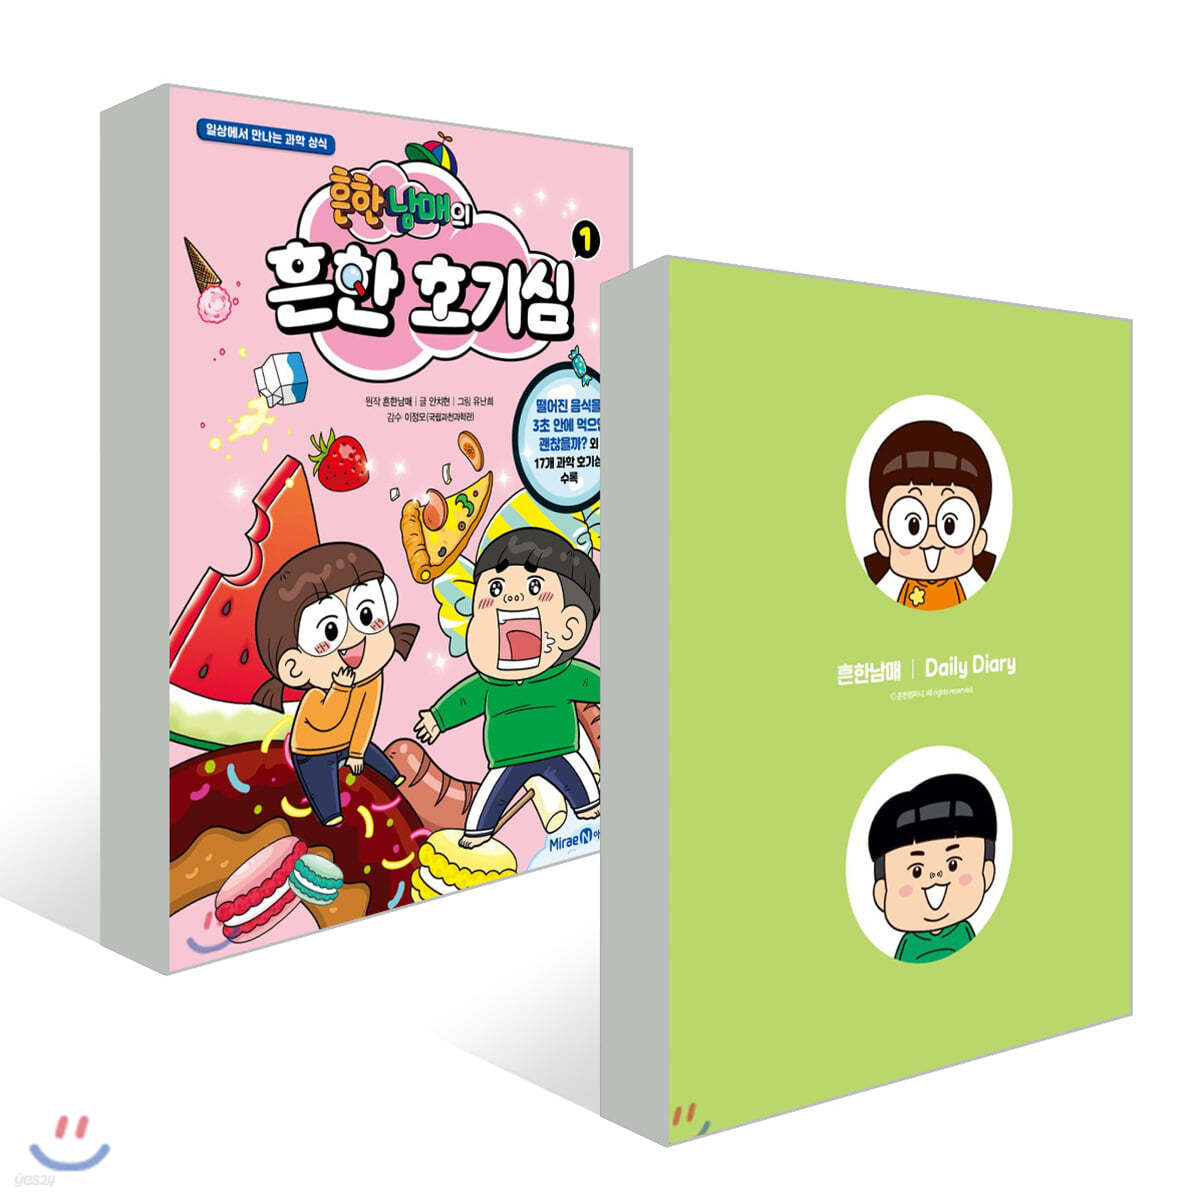 초등3~4학년 흔한남매의 흔한 호기심 1 Childrens Learning Cartoon/흔한남매의 흔한 호기심 Korean Books 일상에서 만나는 과학 상식/Common Sense of Science/Shipping from Korea 